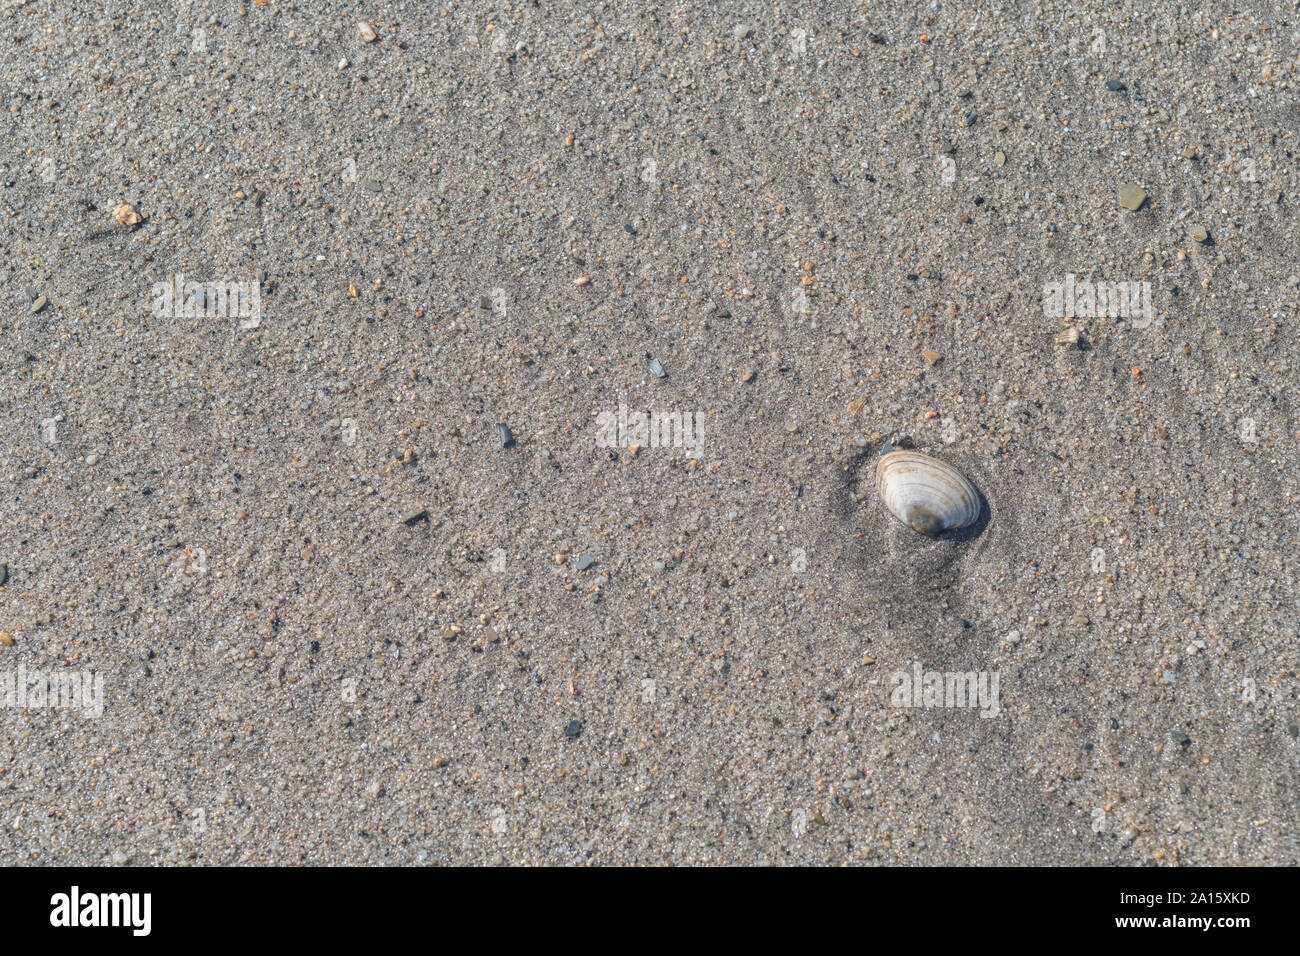 Isolierte seashell gewaschen an Land an einem Sandstrand in Cornwall. Isolierte shell, Isolation, einsam, allein, einsam, conchology. Stockfoto